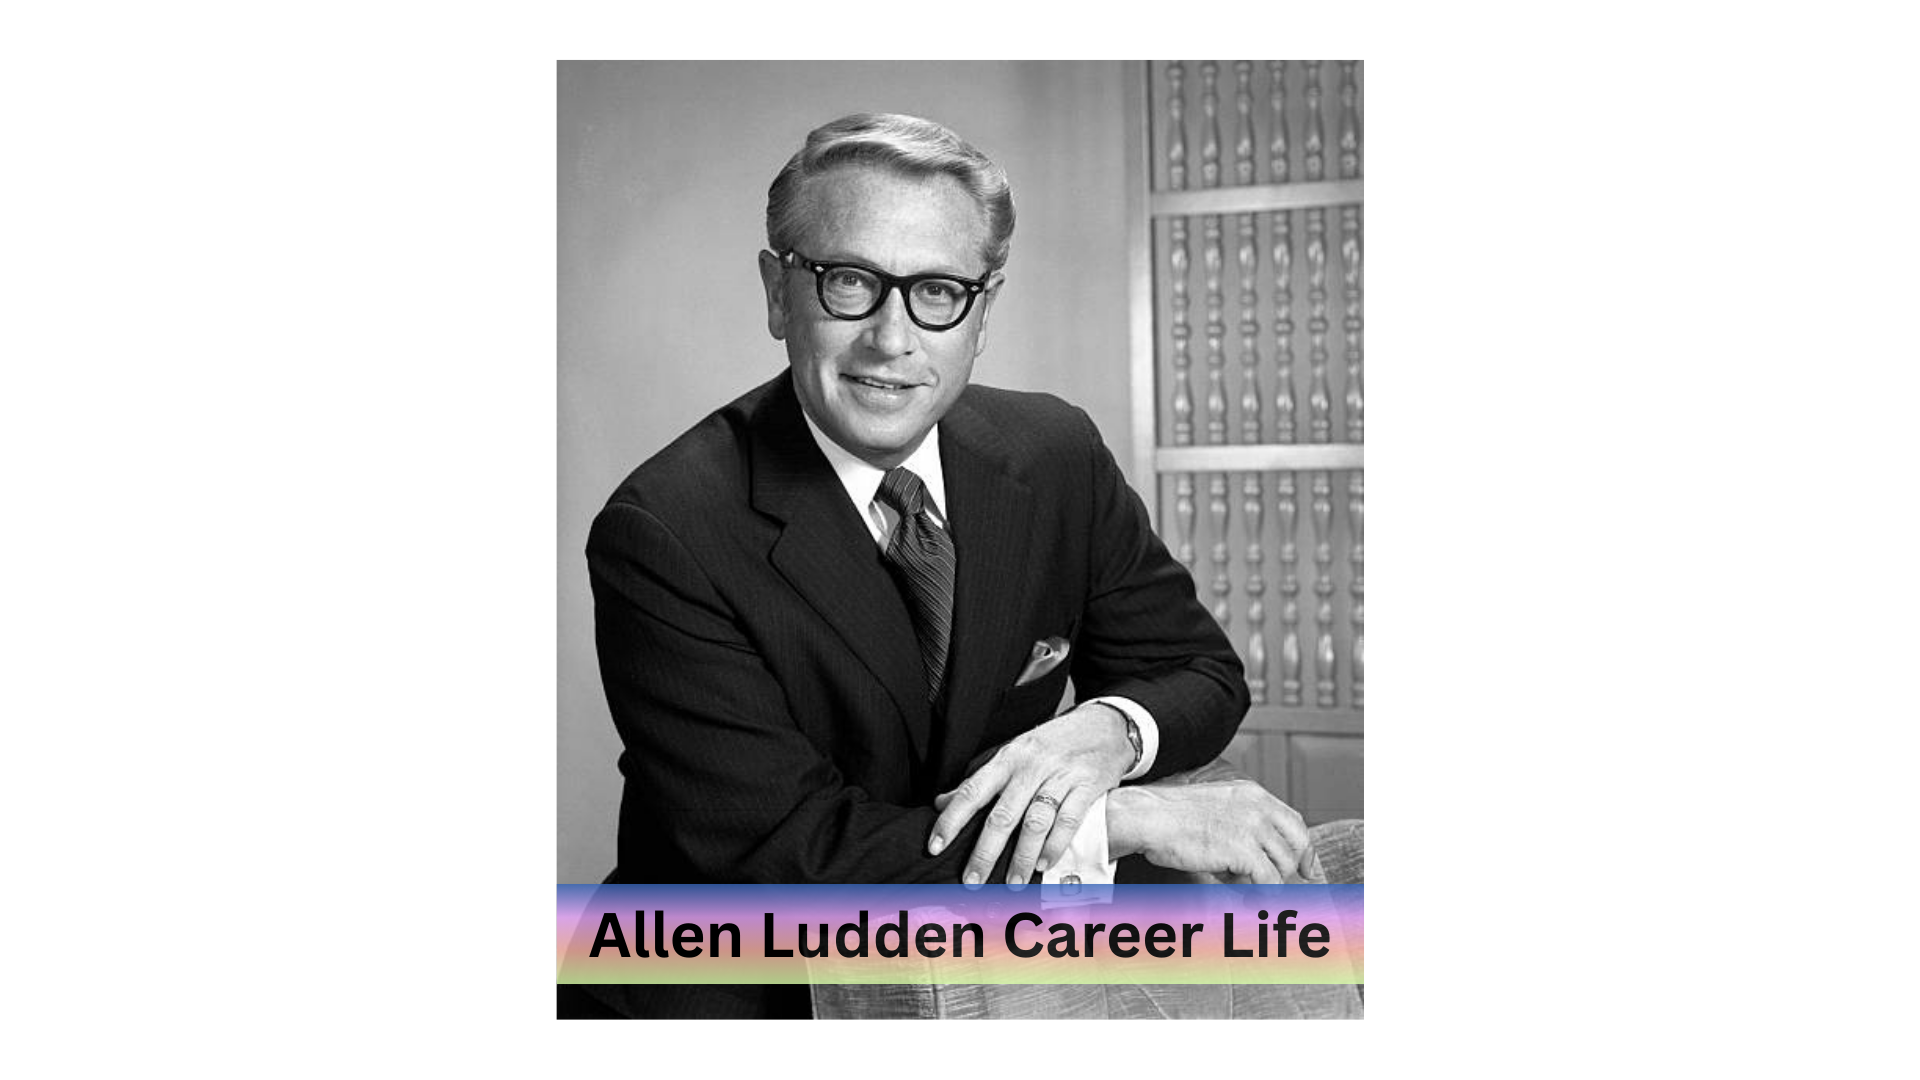 Allen Ludden Career Life